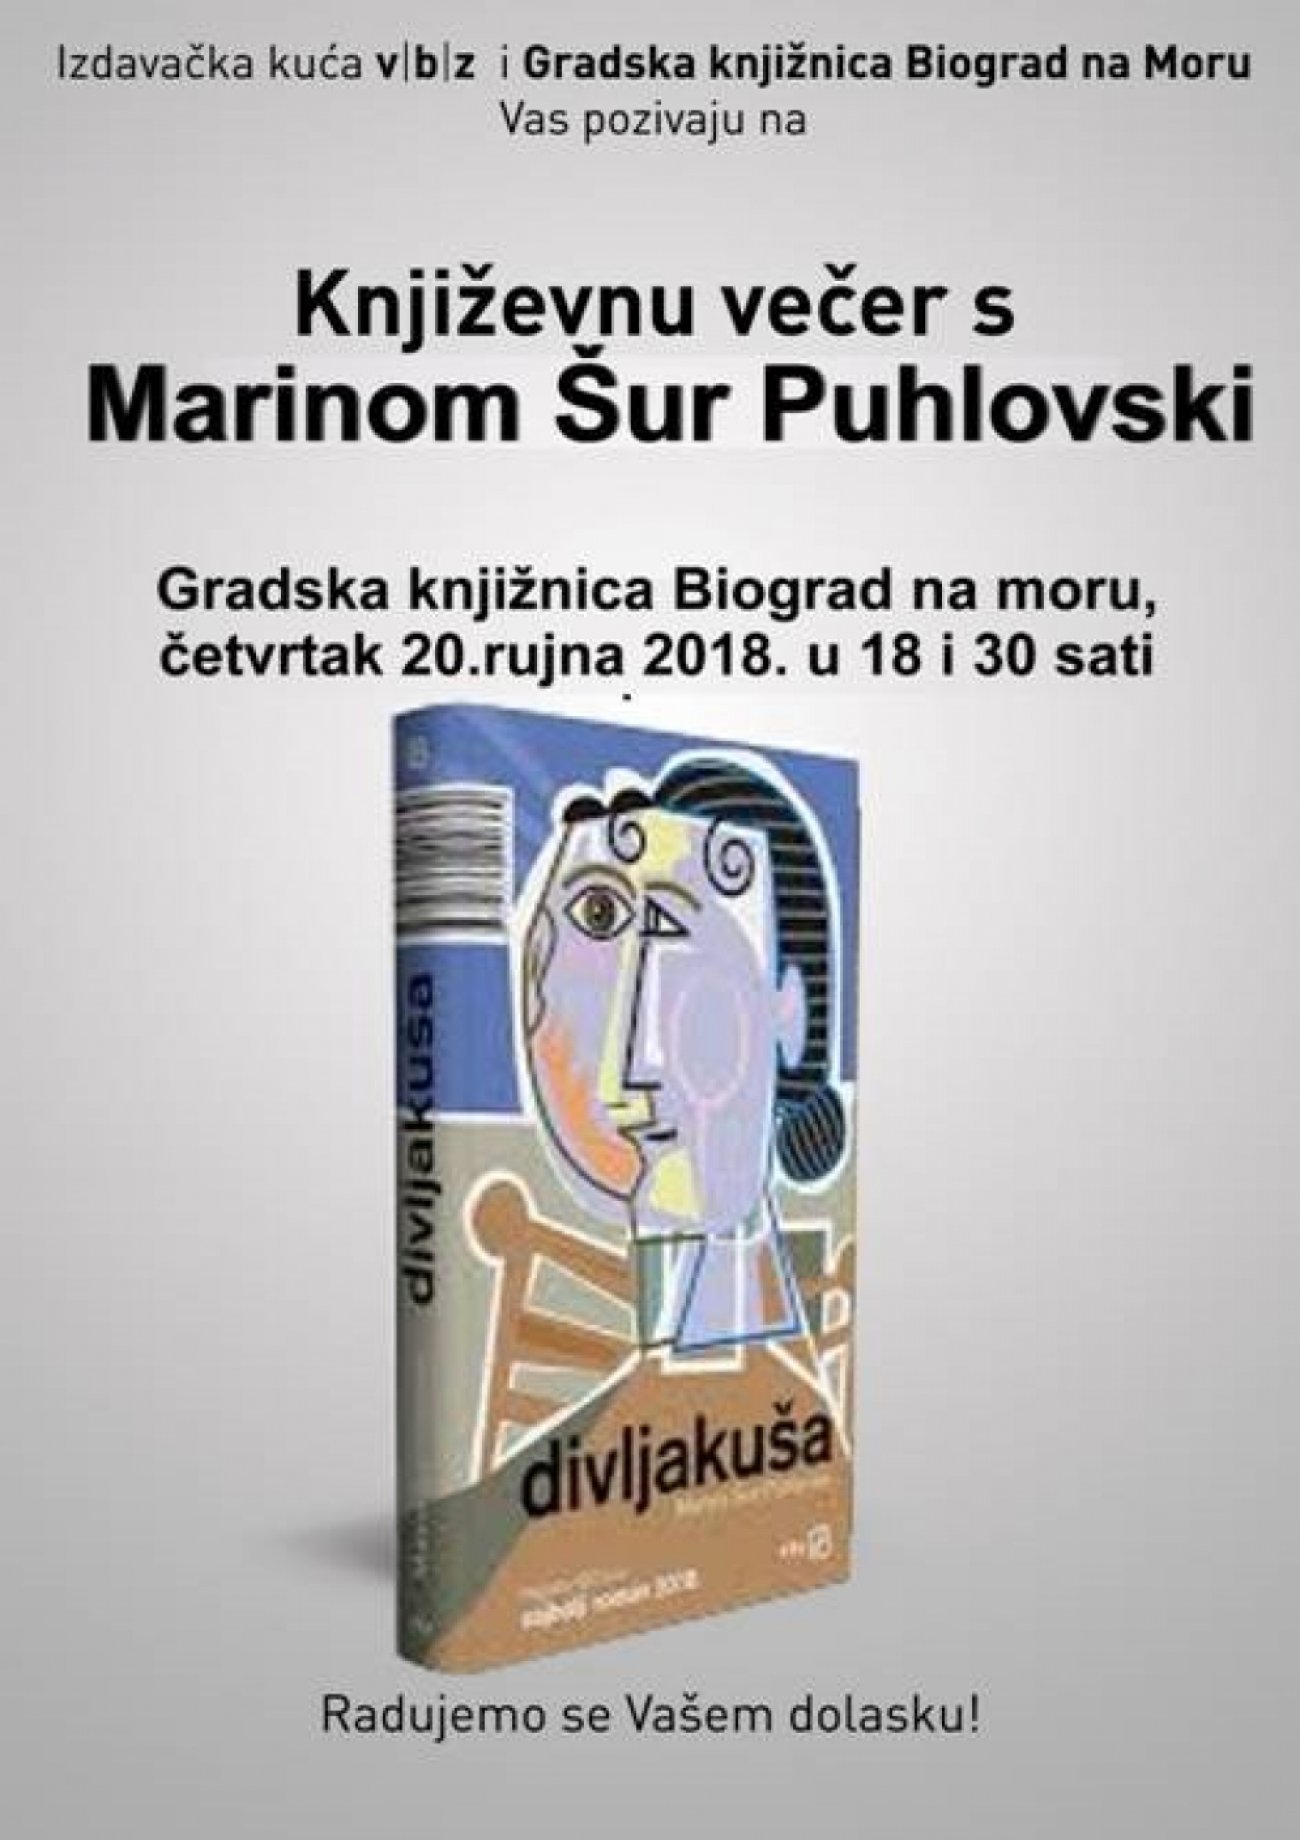 Gradska knjižnica Biograd na Moru i izdavačka kuća VBZ Vas pozivaju na gostovanje književnice Marine Šur Puhlovski